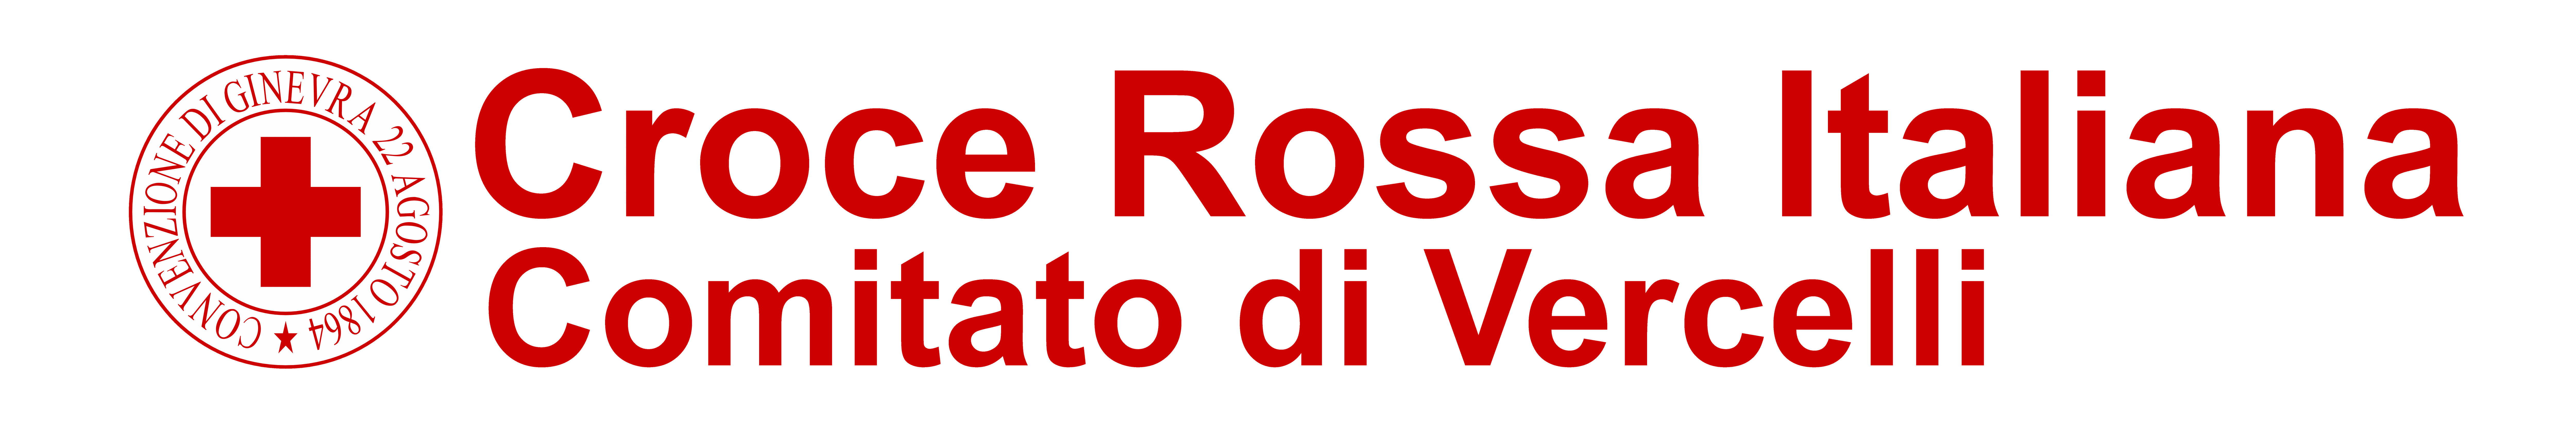 Croce Rossa Italiana - Comitato di Vercelli